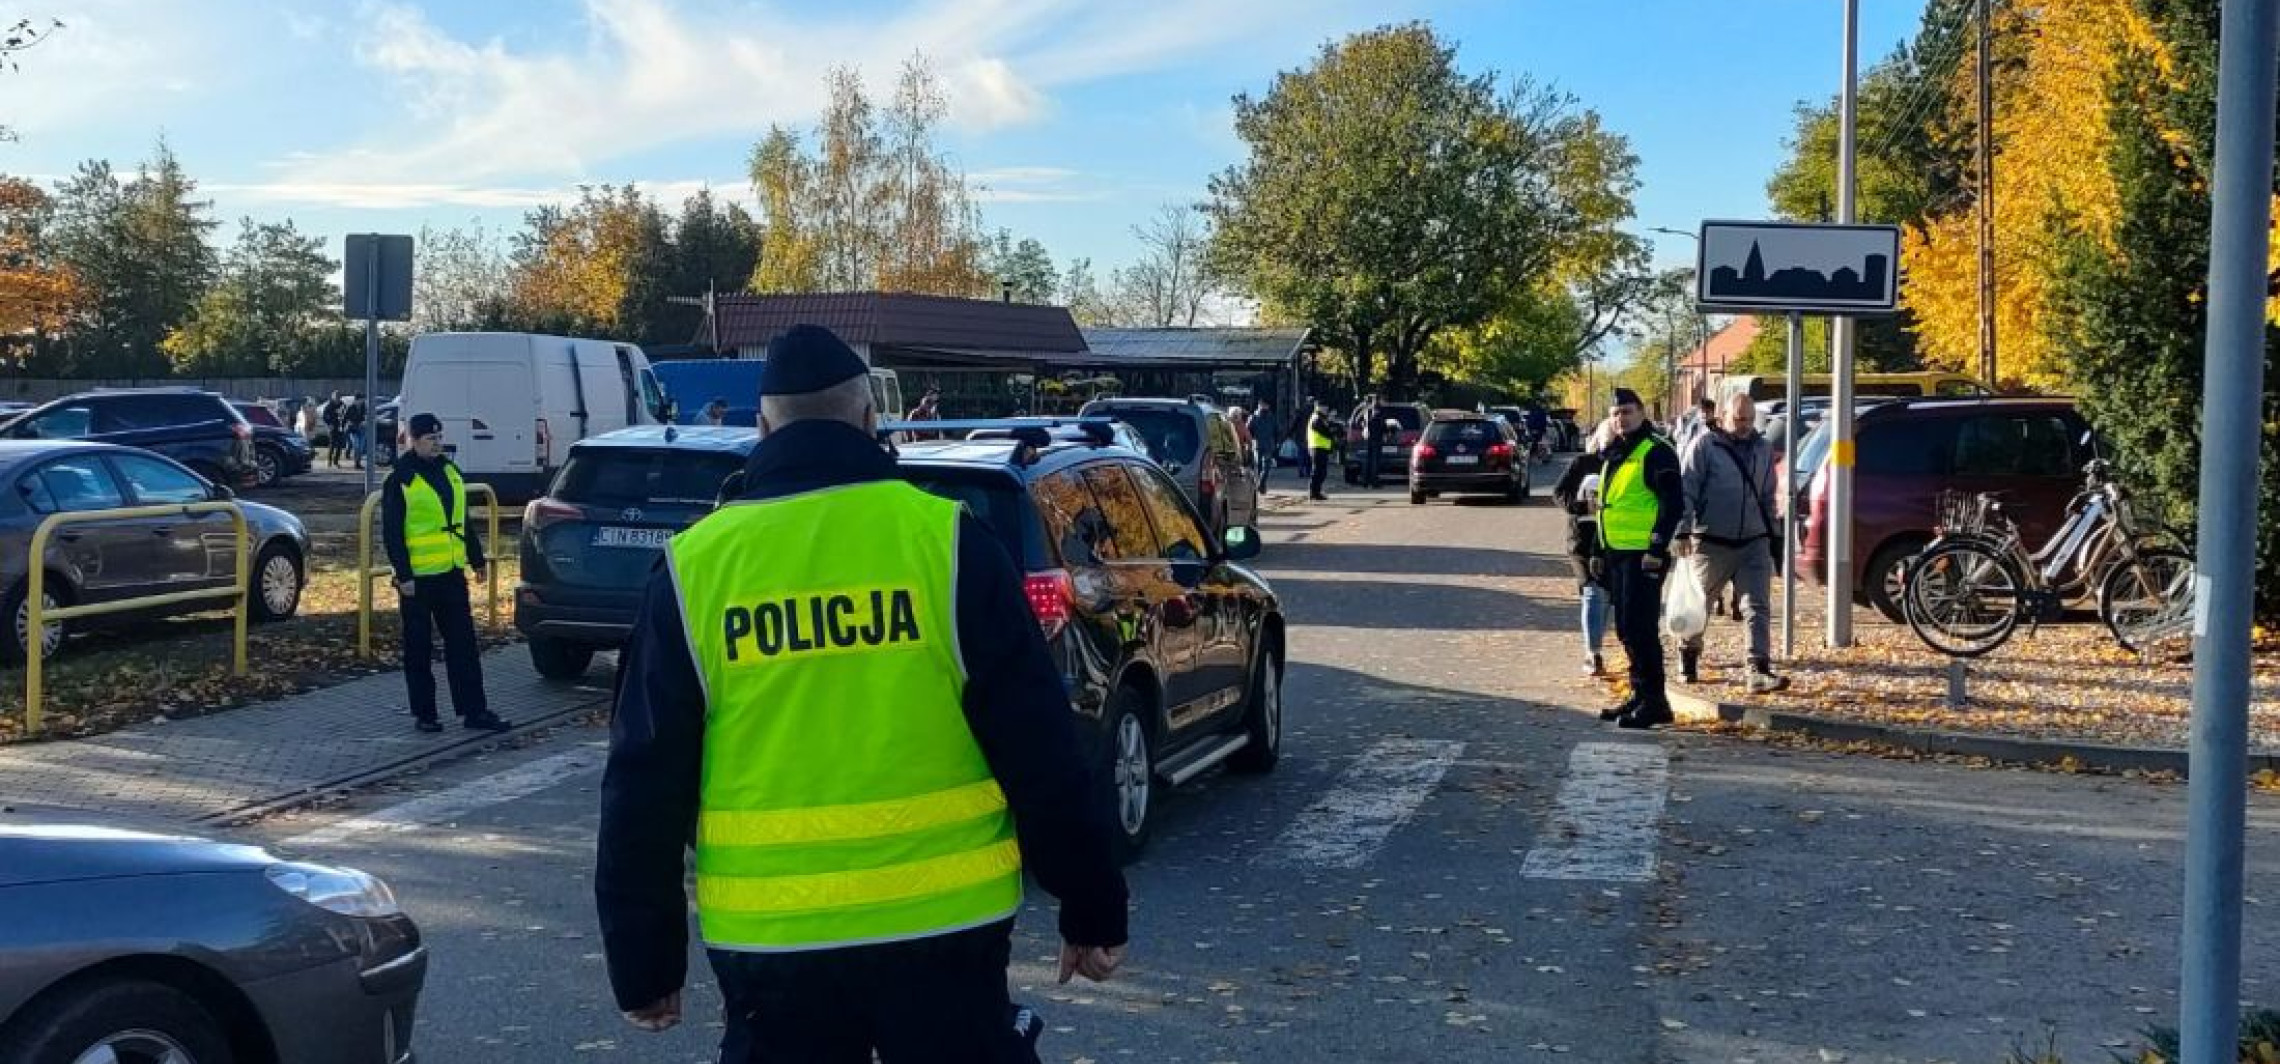 Inowrocław - Policja podsumowała 1 listopada na drogach